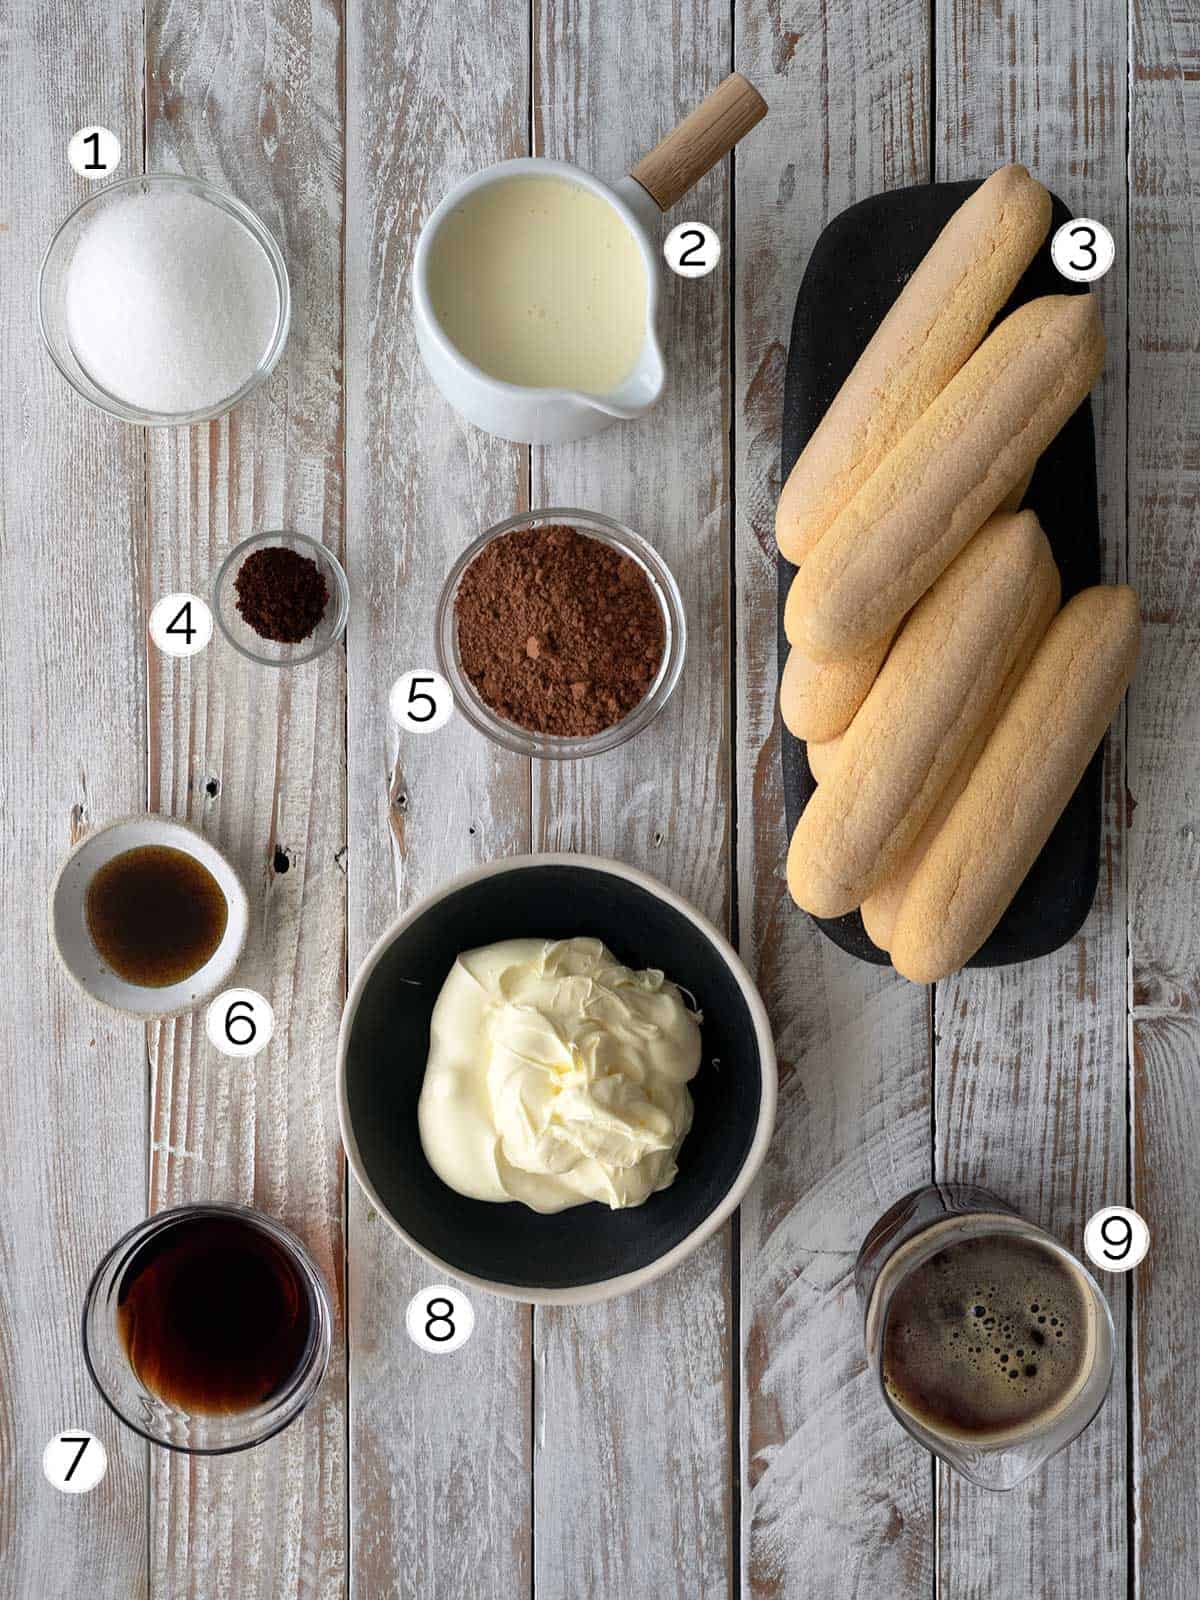 Ingredients for eggless tiramisu.